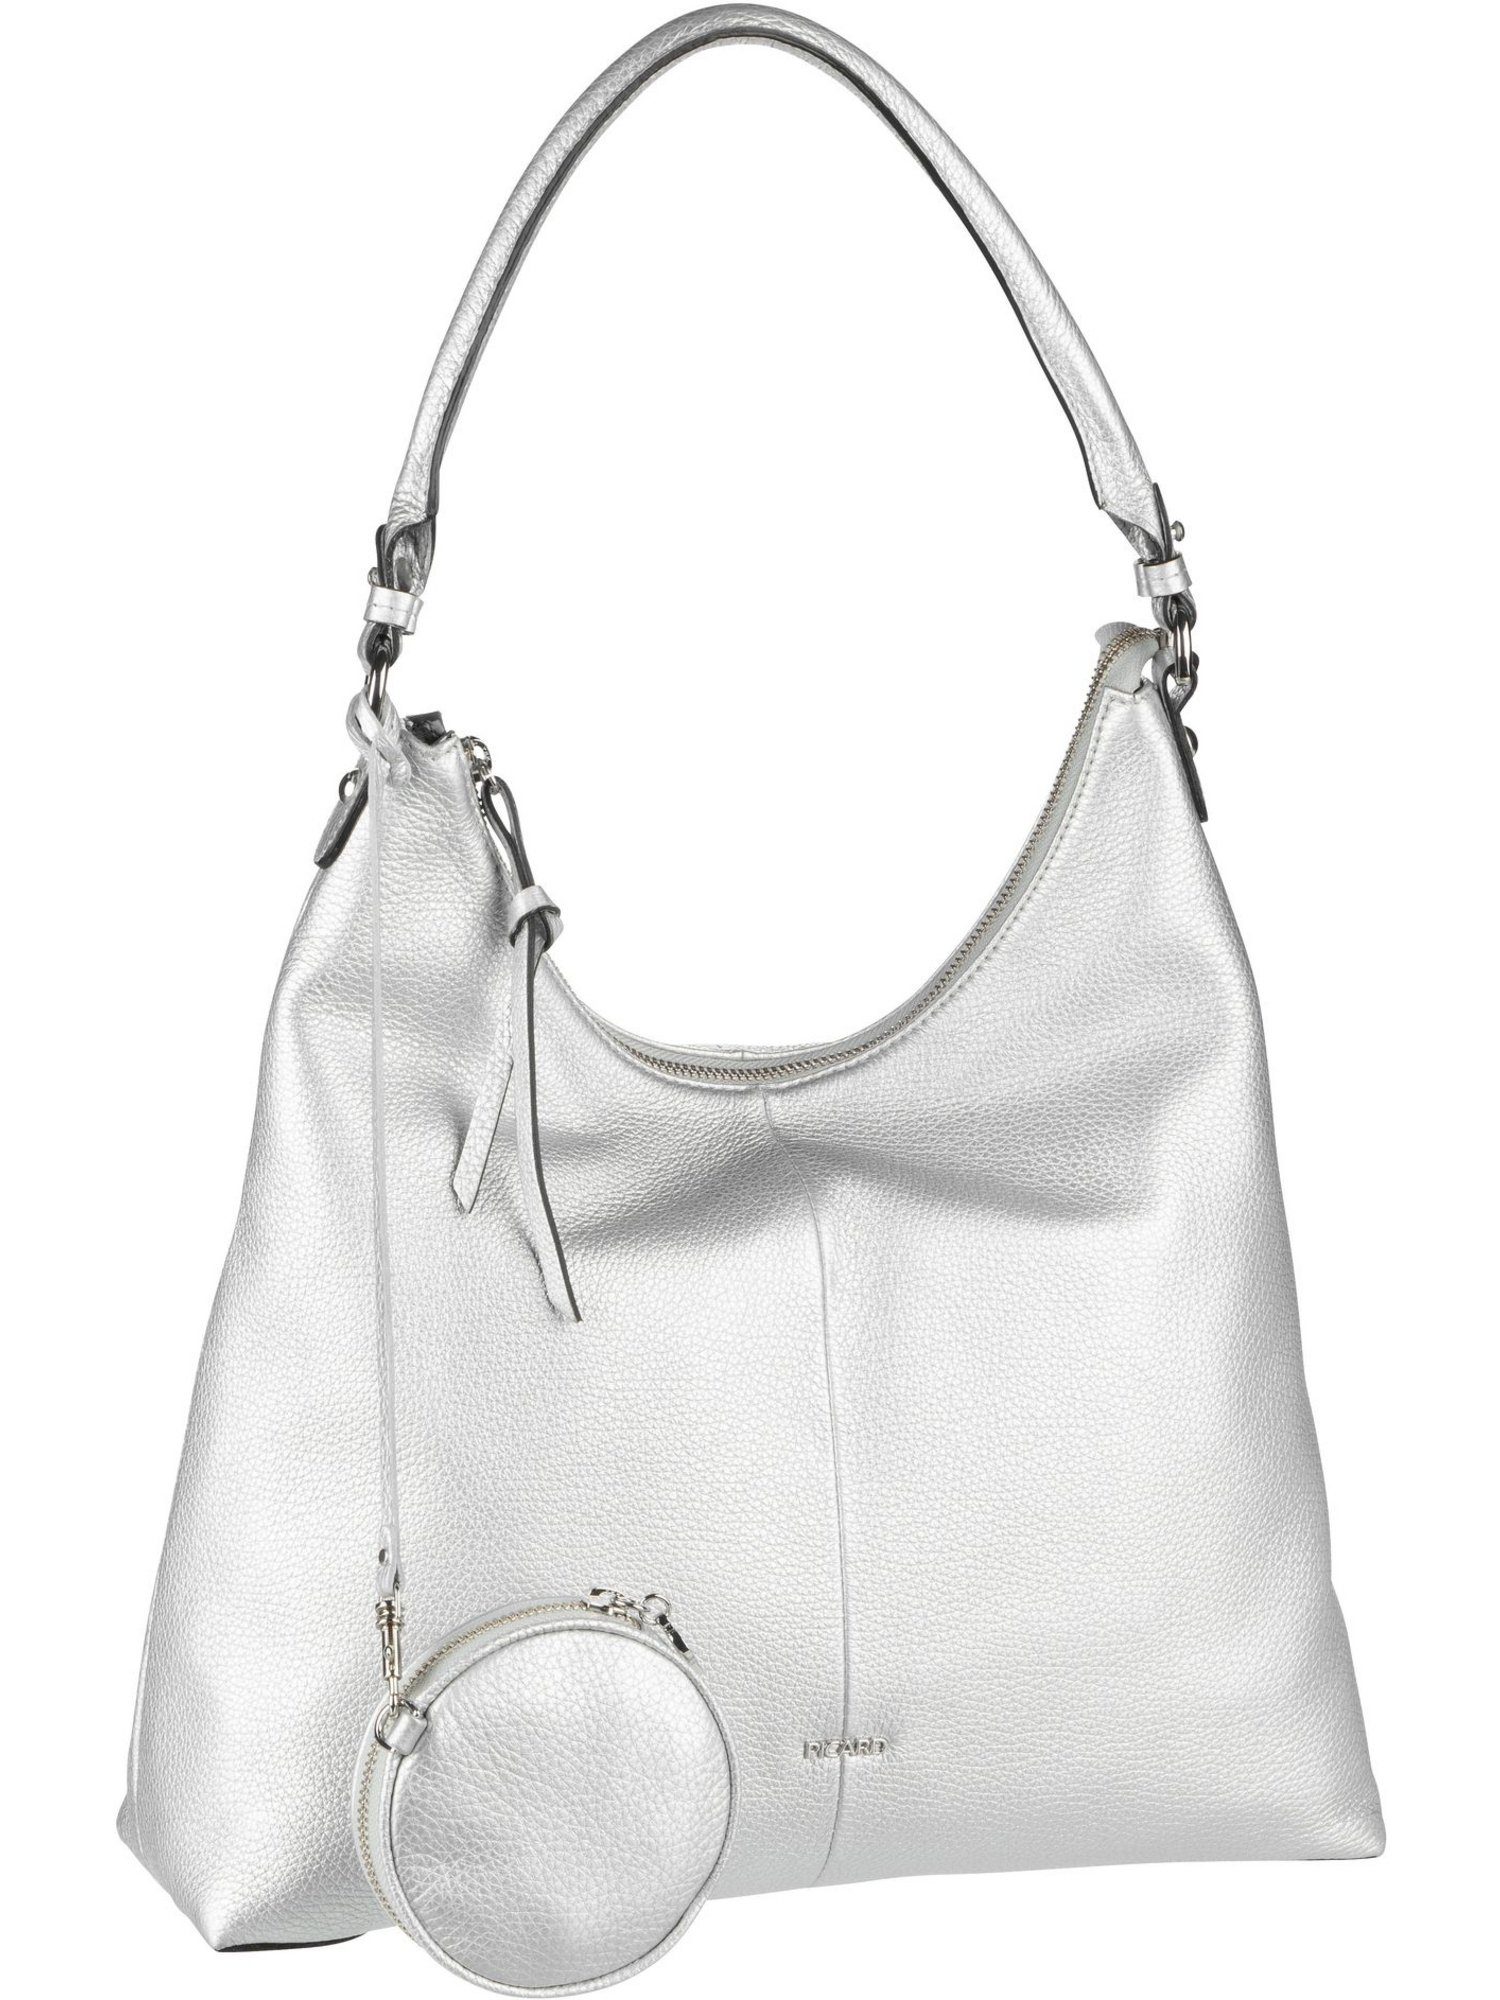 Silberne Handtaschen für Damen online kaufen | OTTO